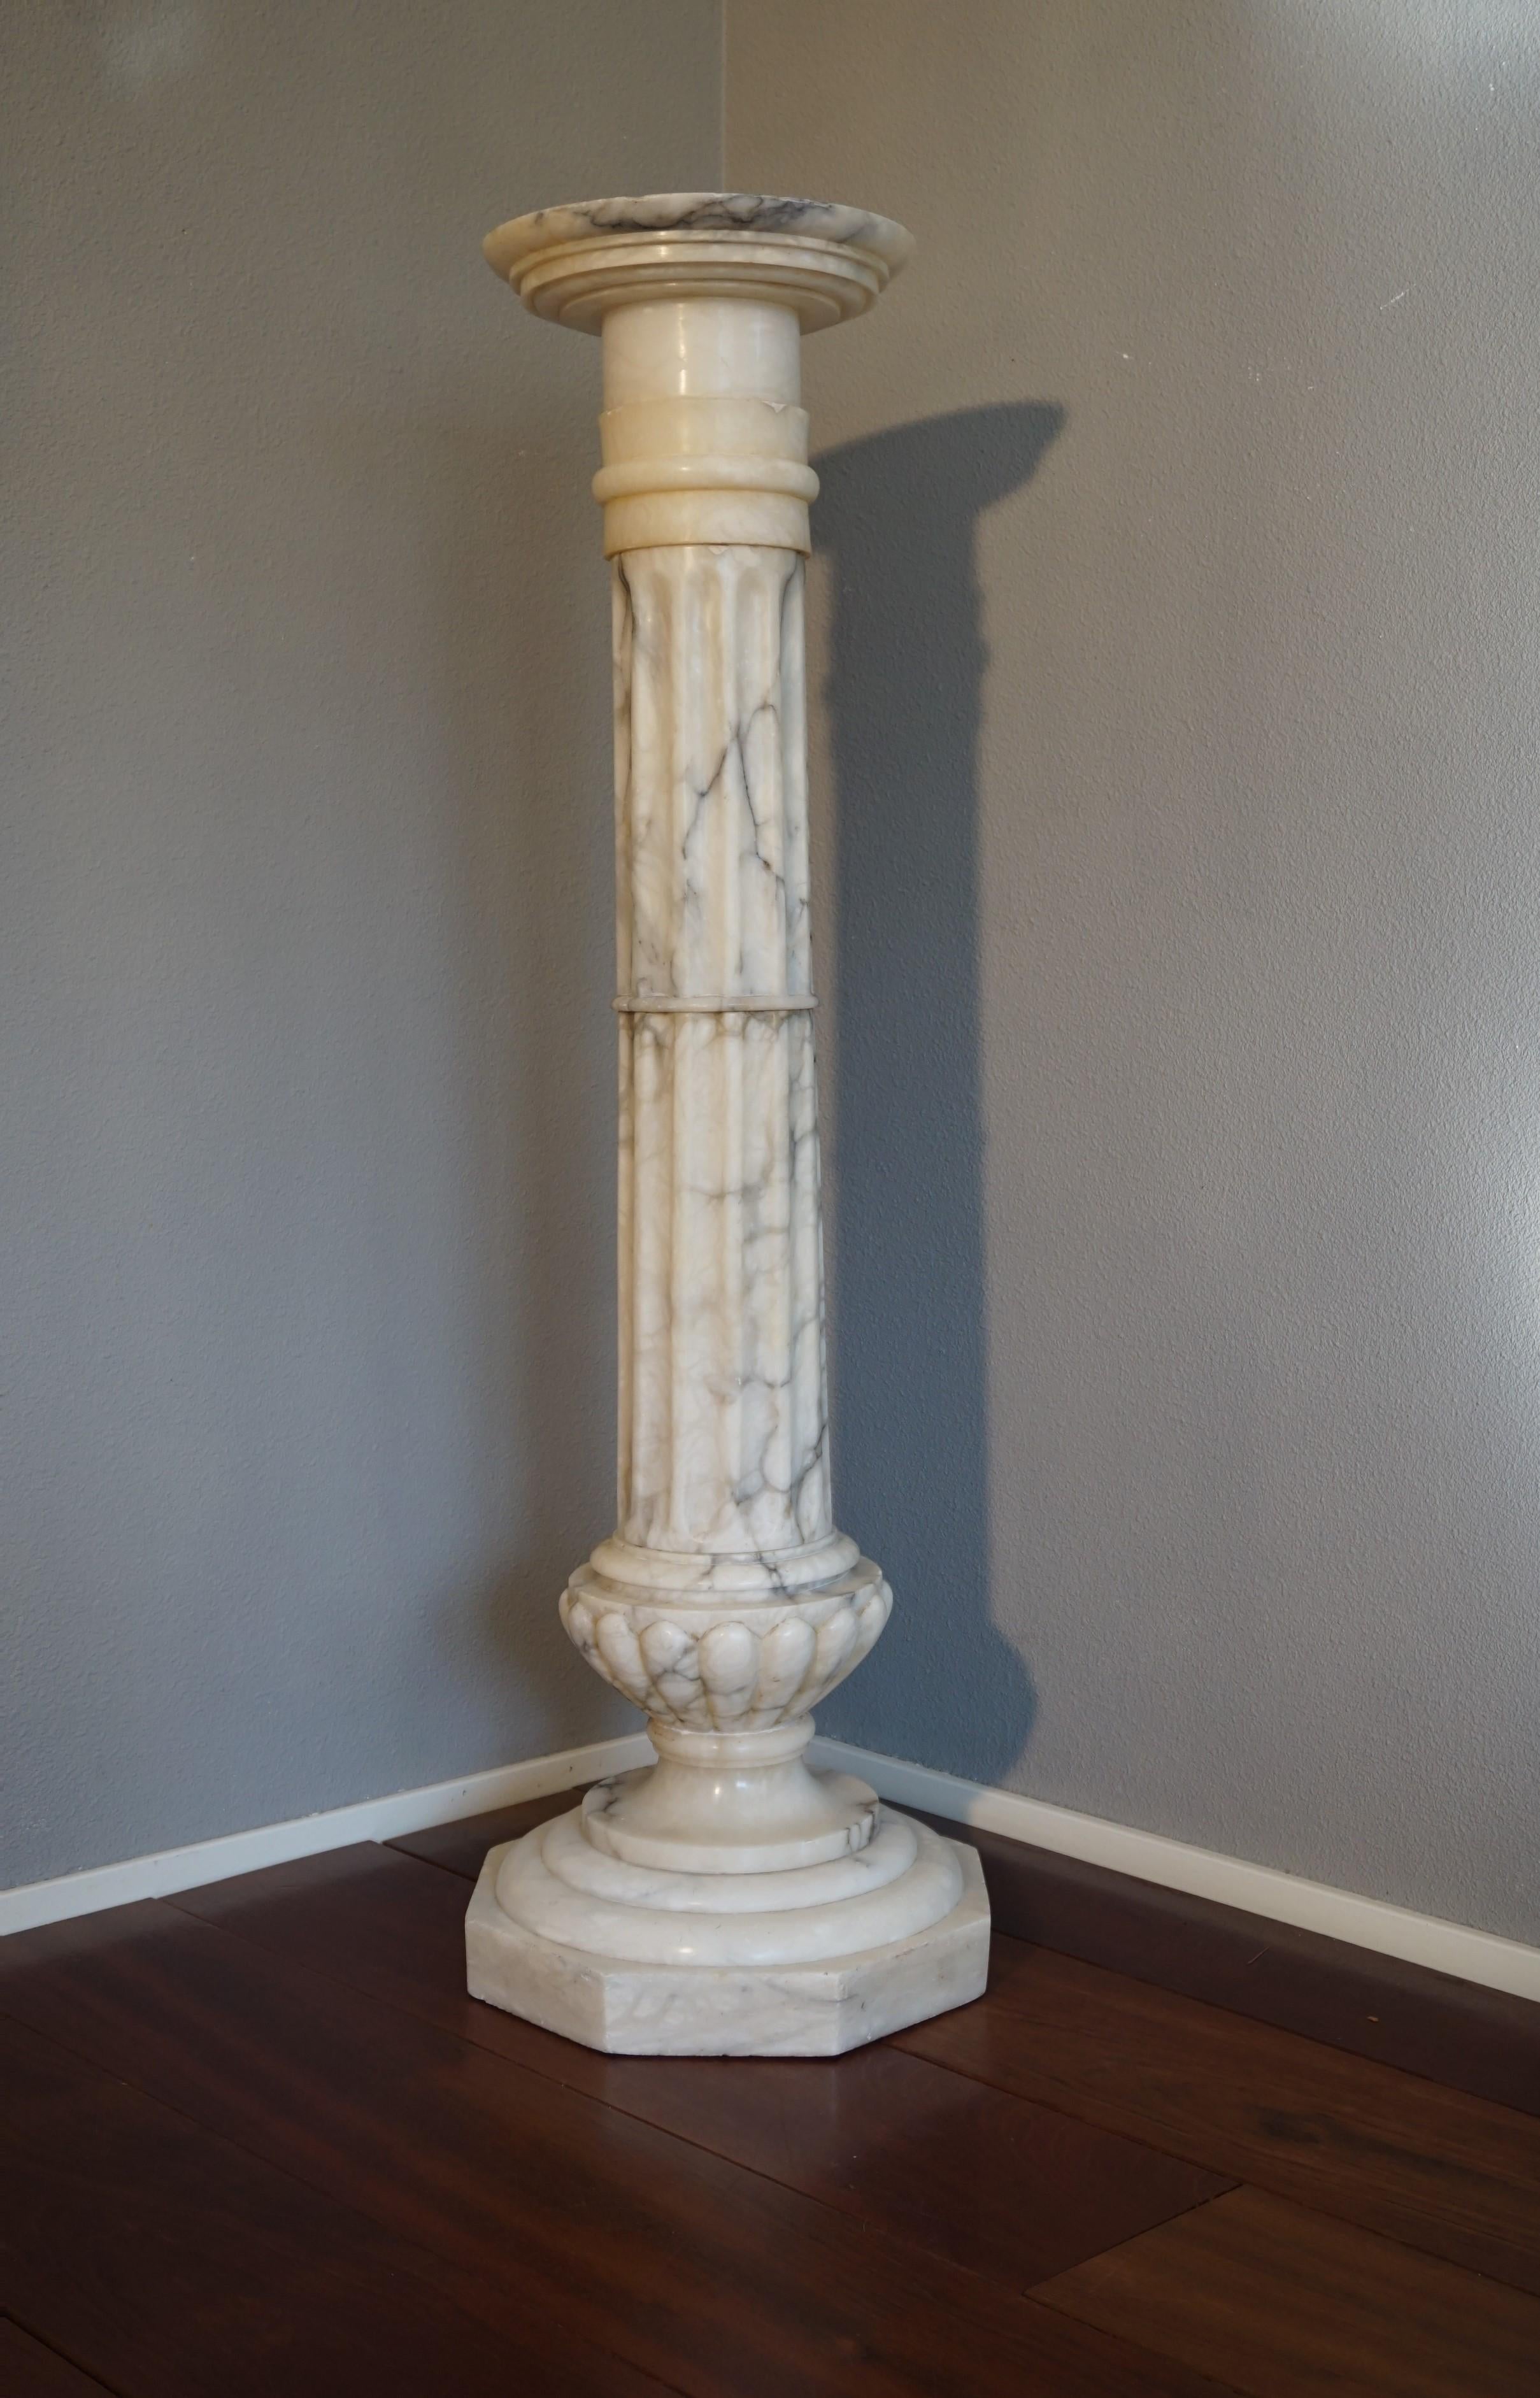 Merveilleuse colonne antique pour présenter une œuvre d'art.

Ce magnifique piédestal classique est parfait pour mettre en valeur une sculpture ou un buste antique. La légère usure, la forme et les merveilleuses veines grises dans l'albâtre